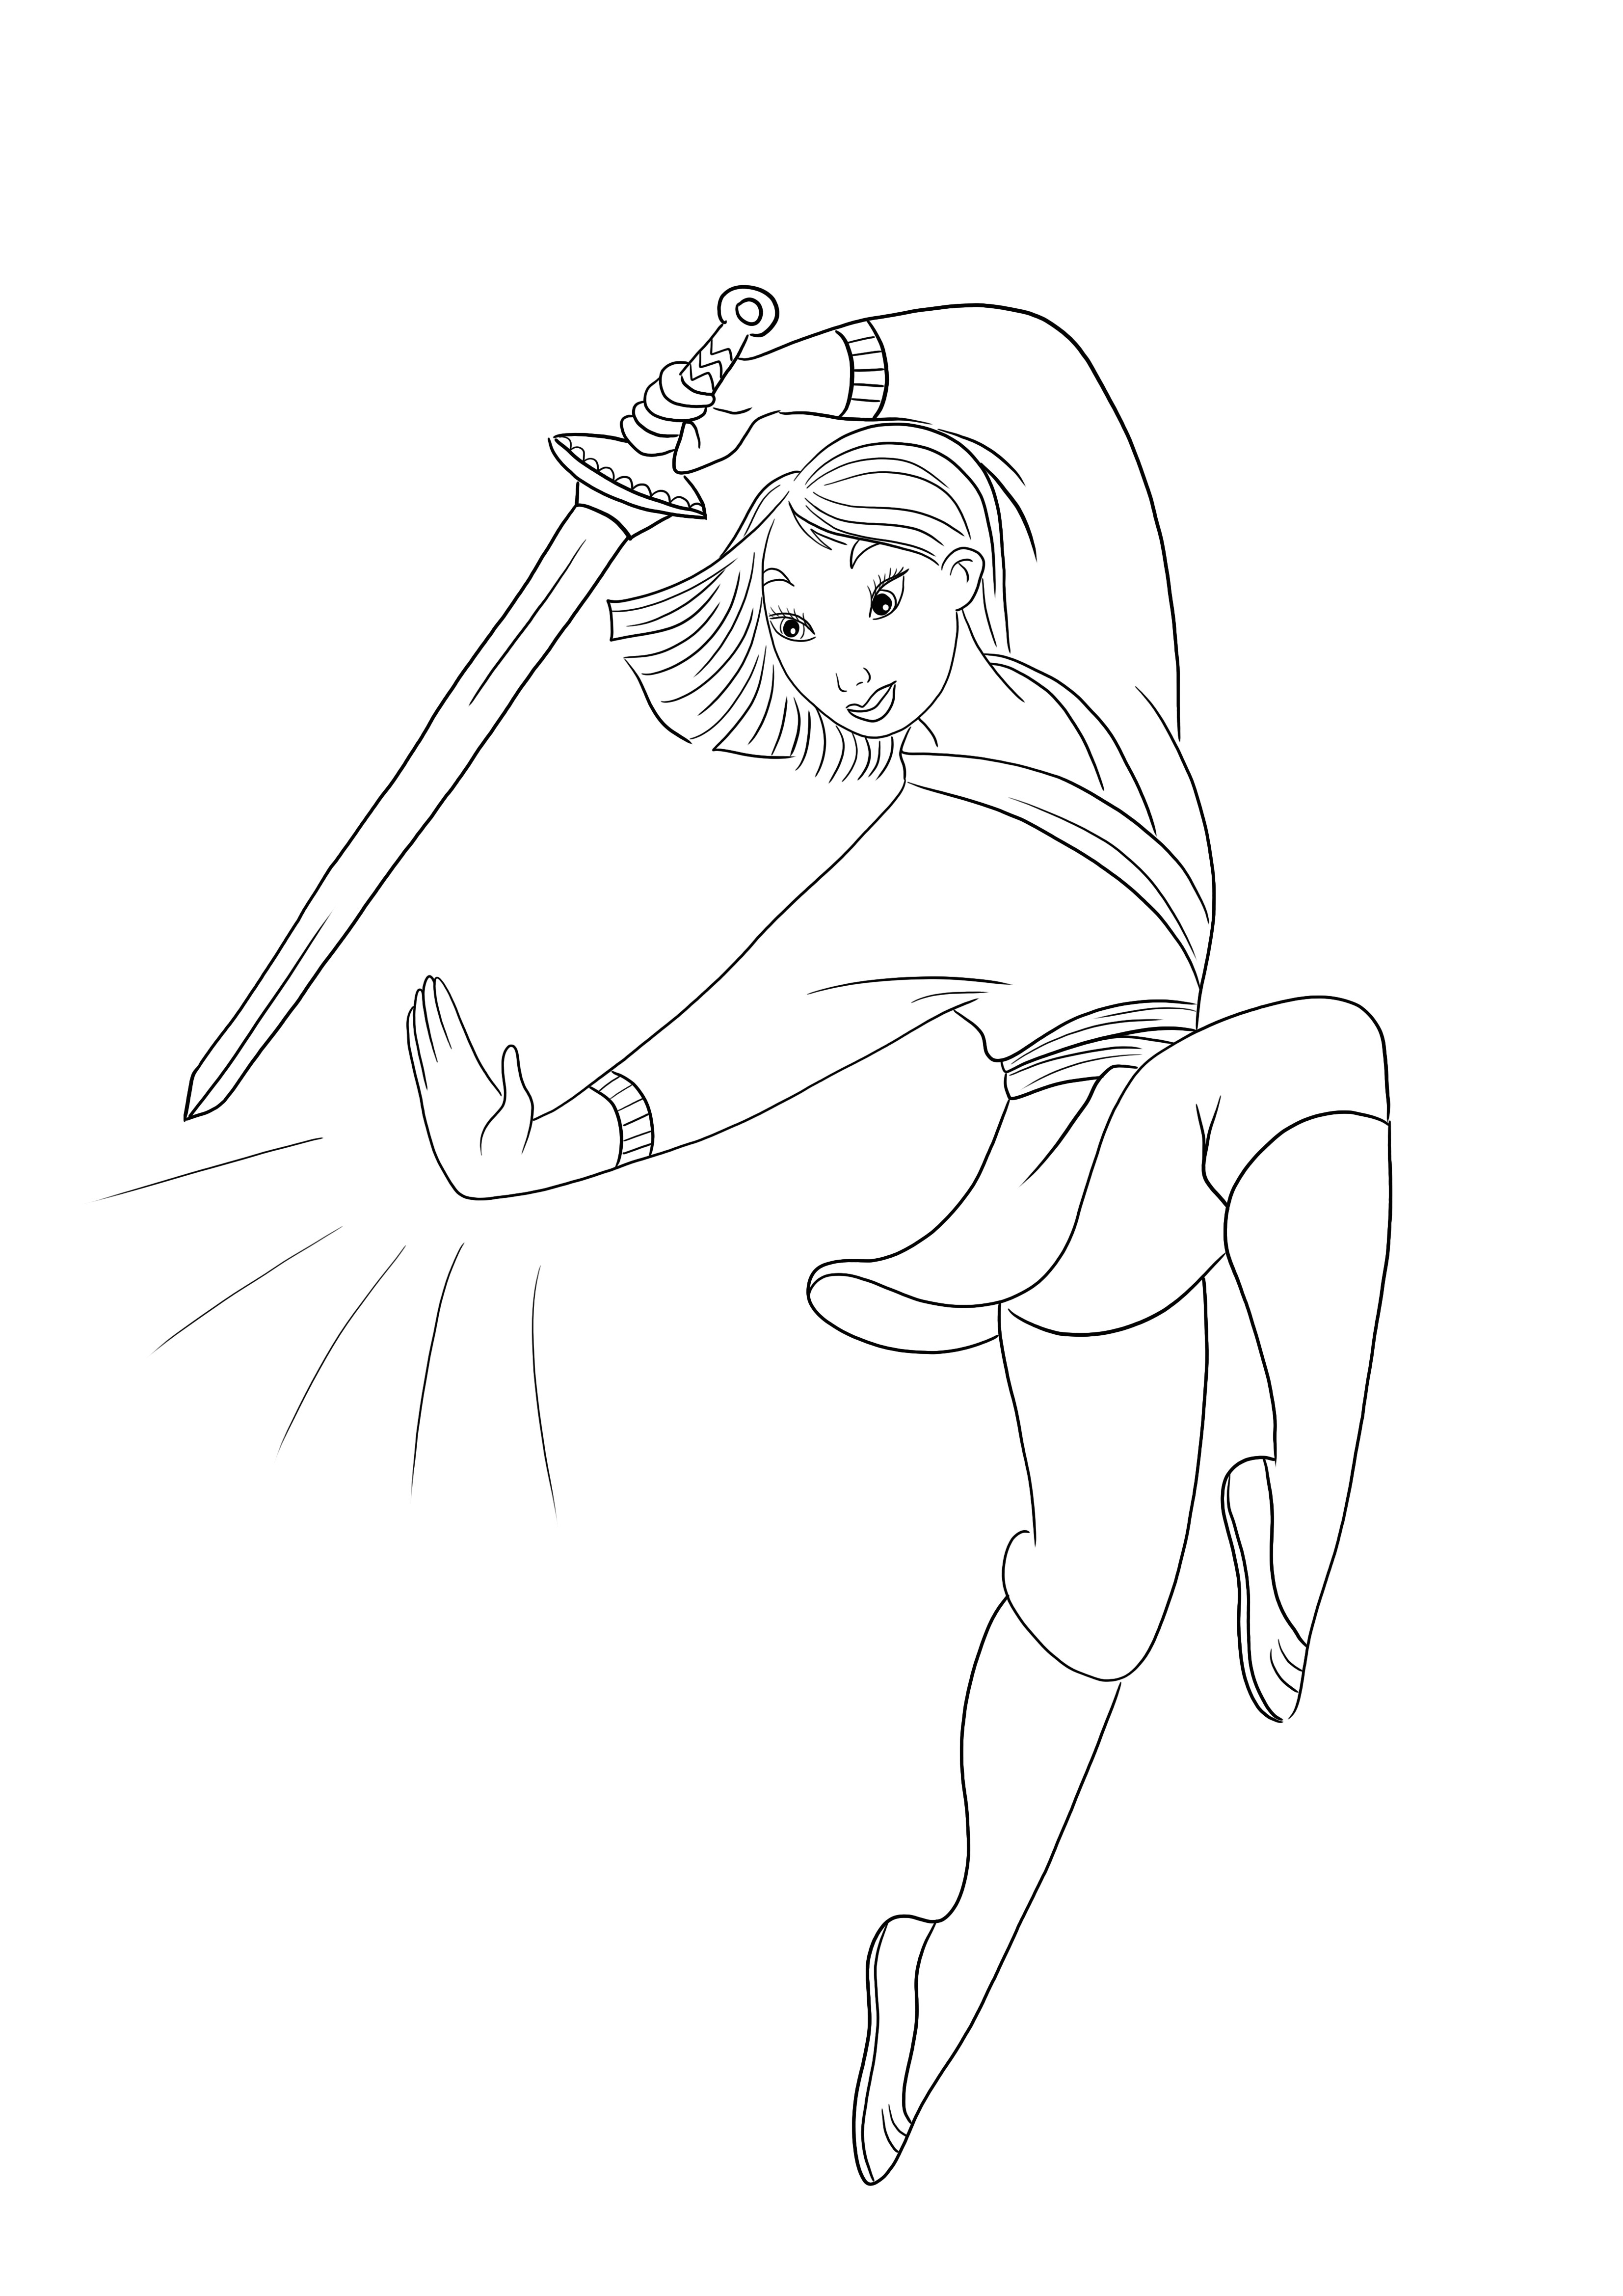 Cetak Putri Mulan dan pedang yang mudah dan gratis untuk diwarnai untuk anak-anak